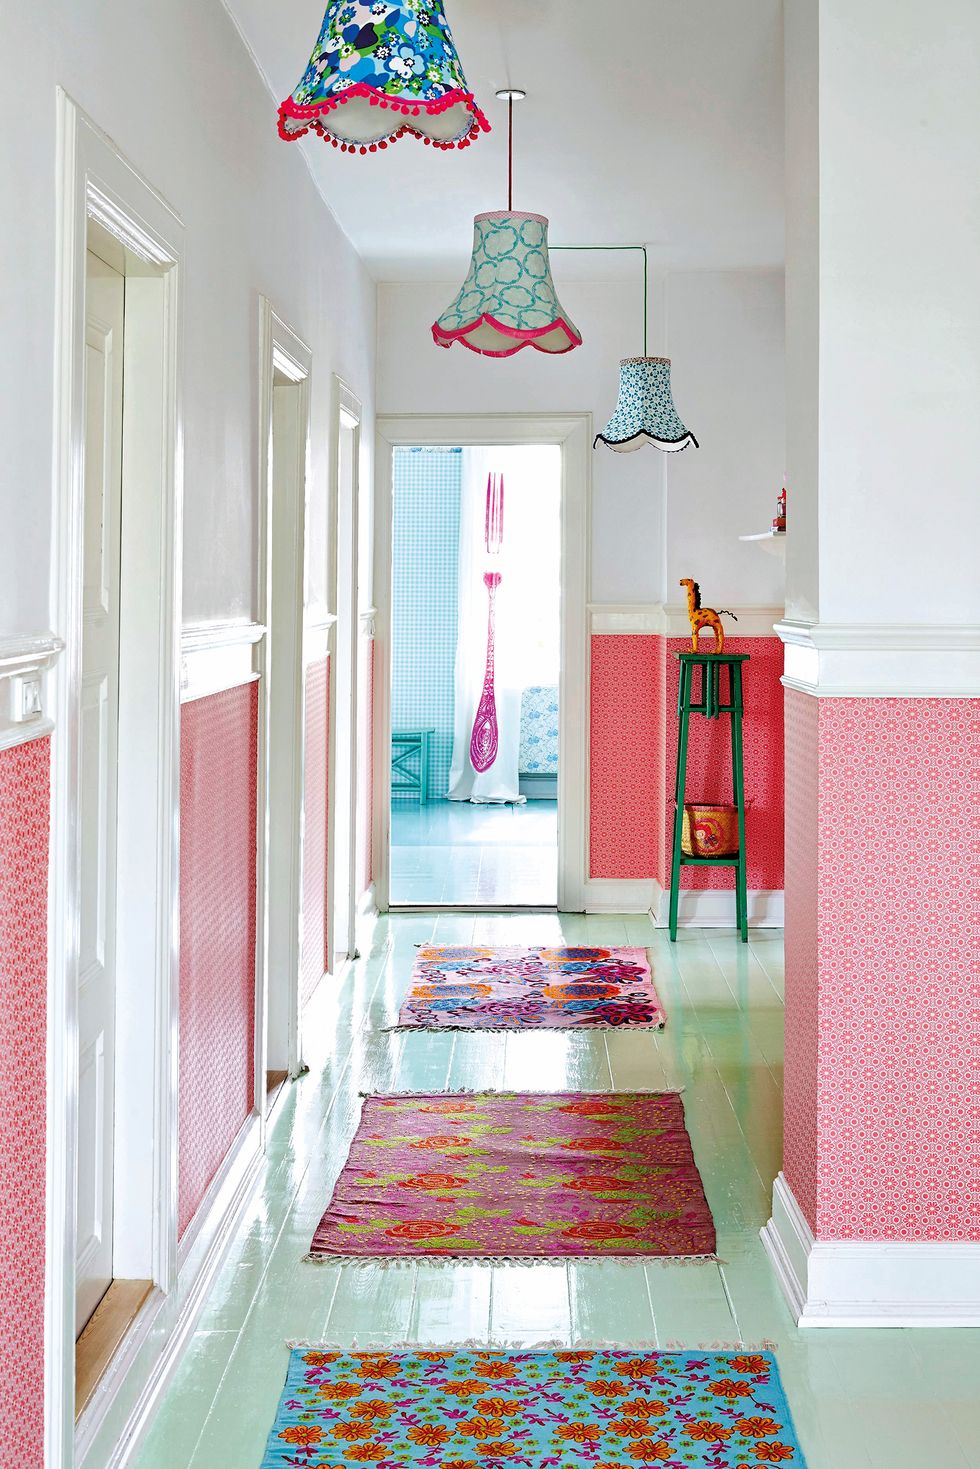 Colocar una alfombra en el pasillo: ¿es una buena idea? Analizamos pros y  contras